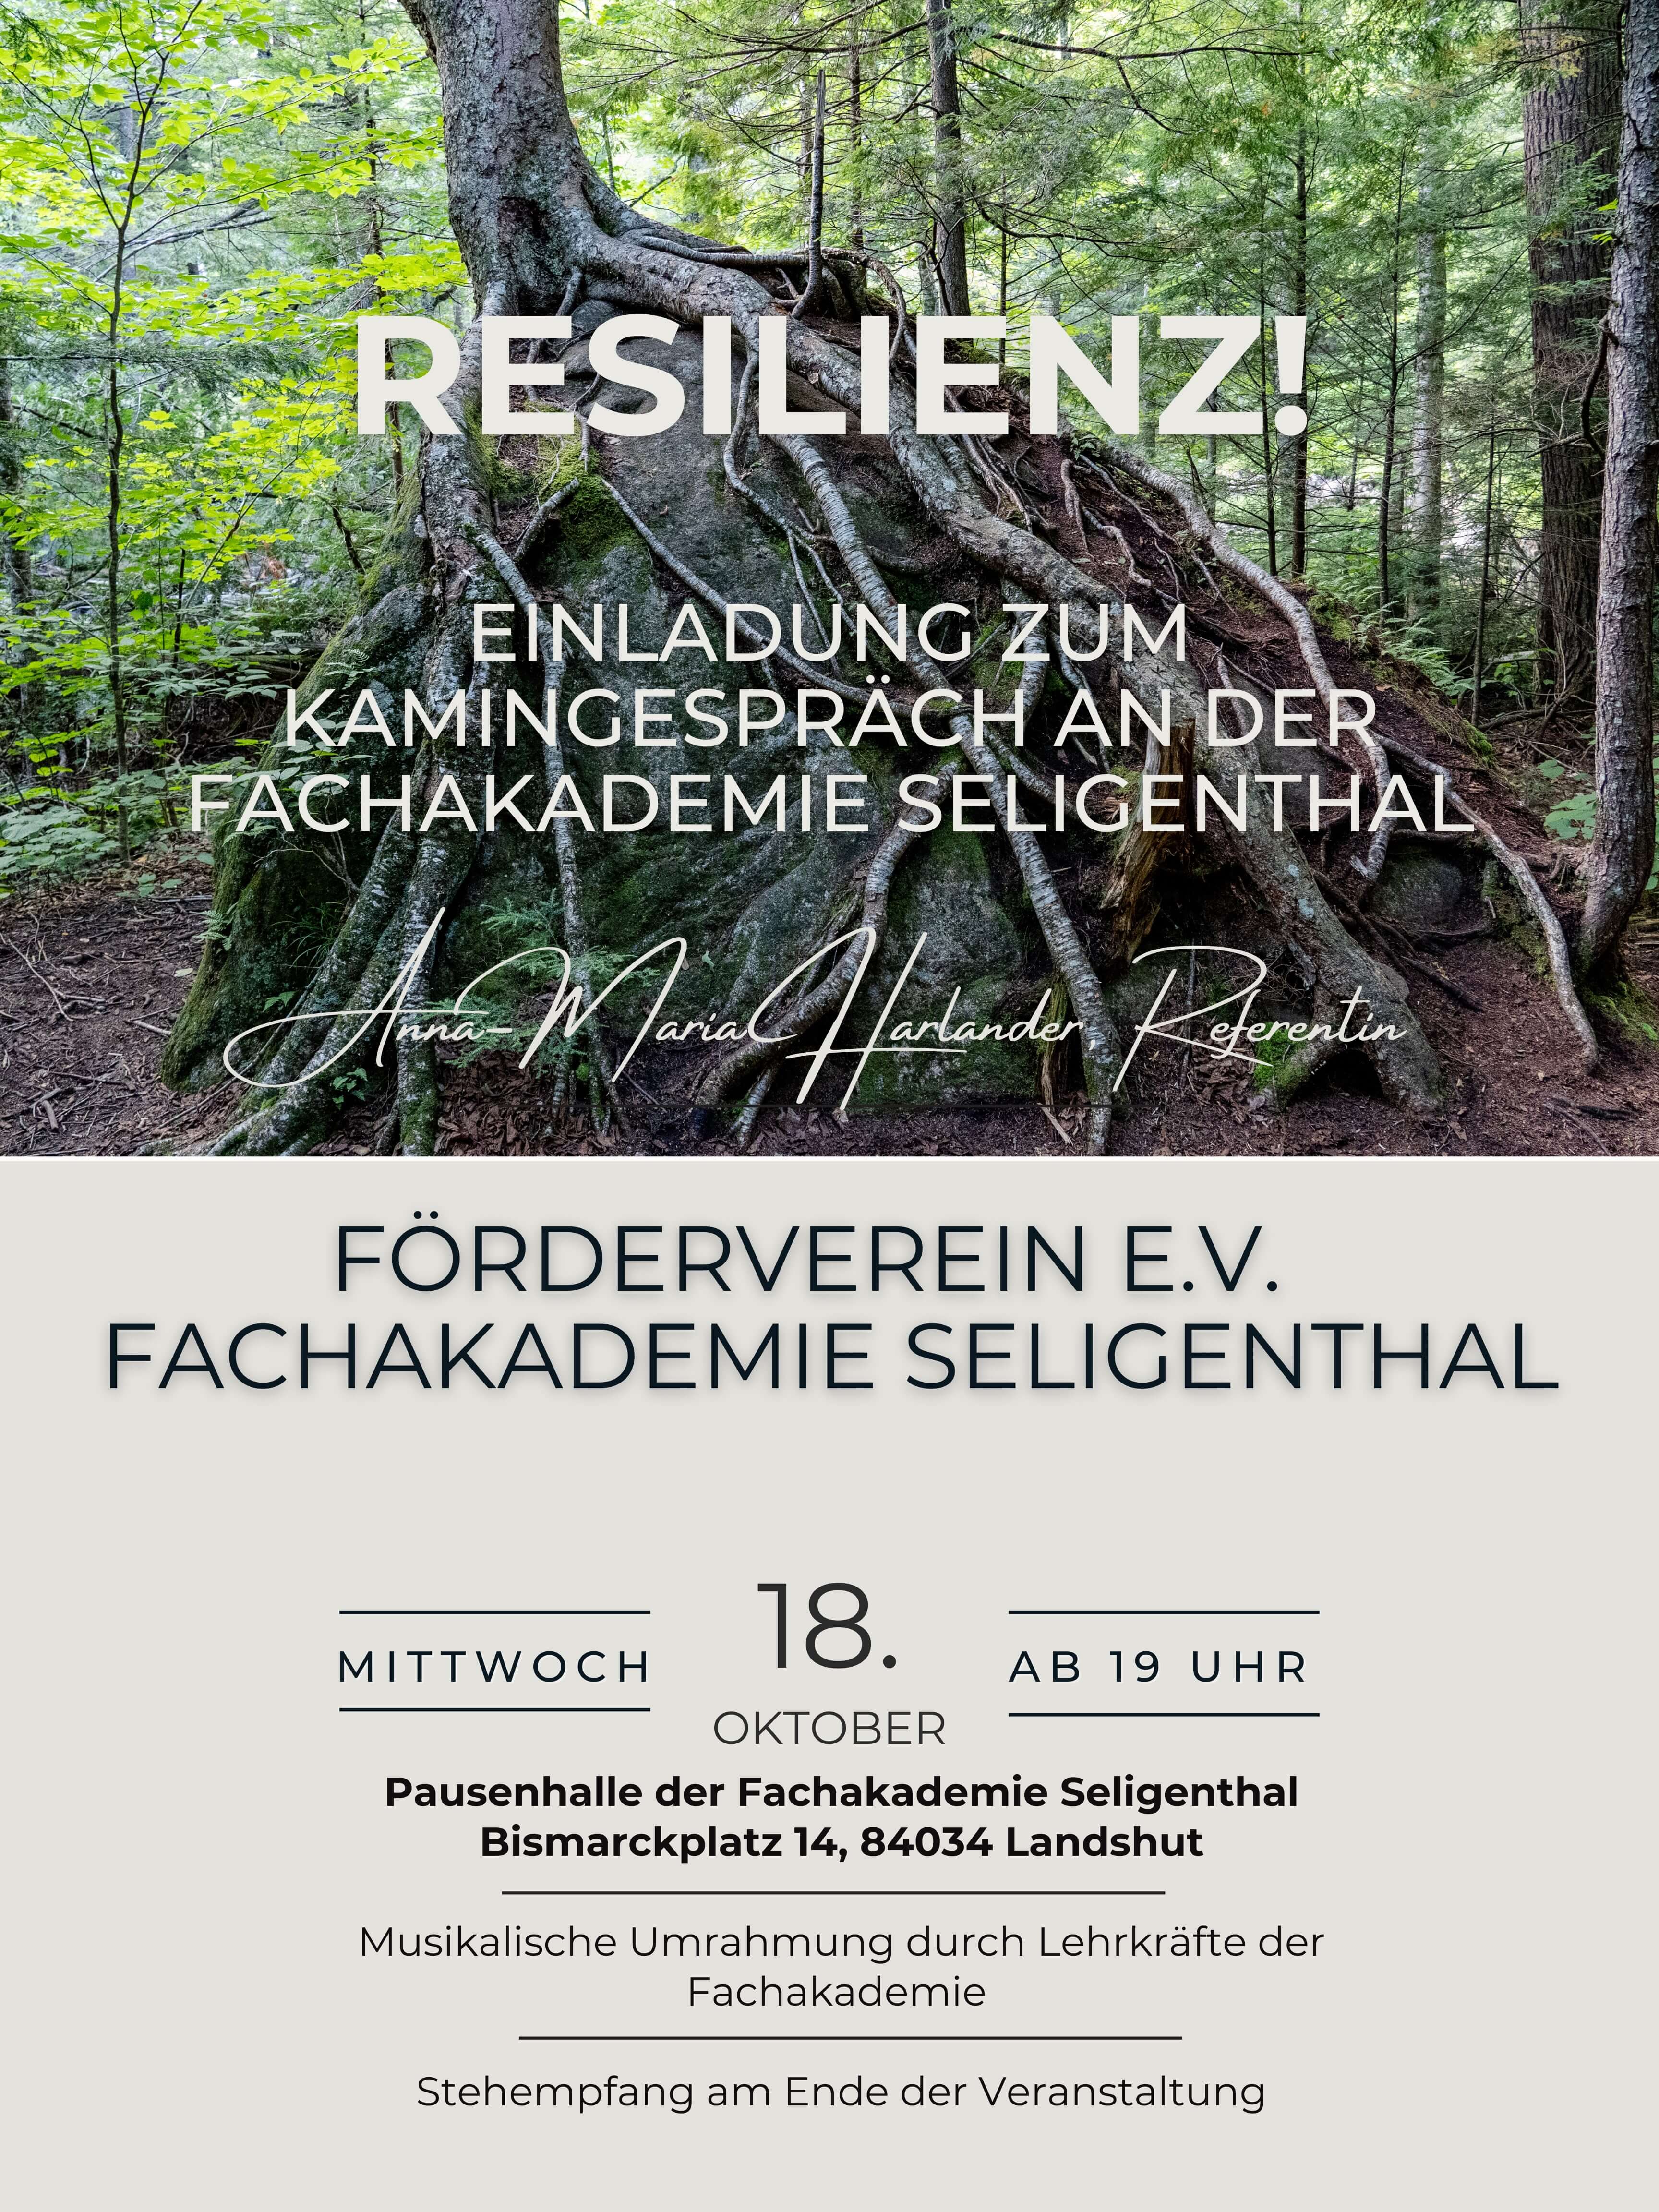 Förderverein lädt zum Kaminabend „Resilienz“ am 18.10.23 ein